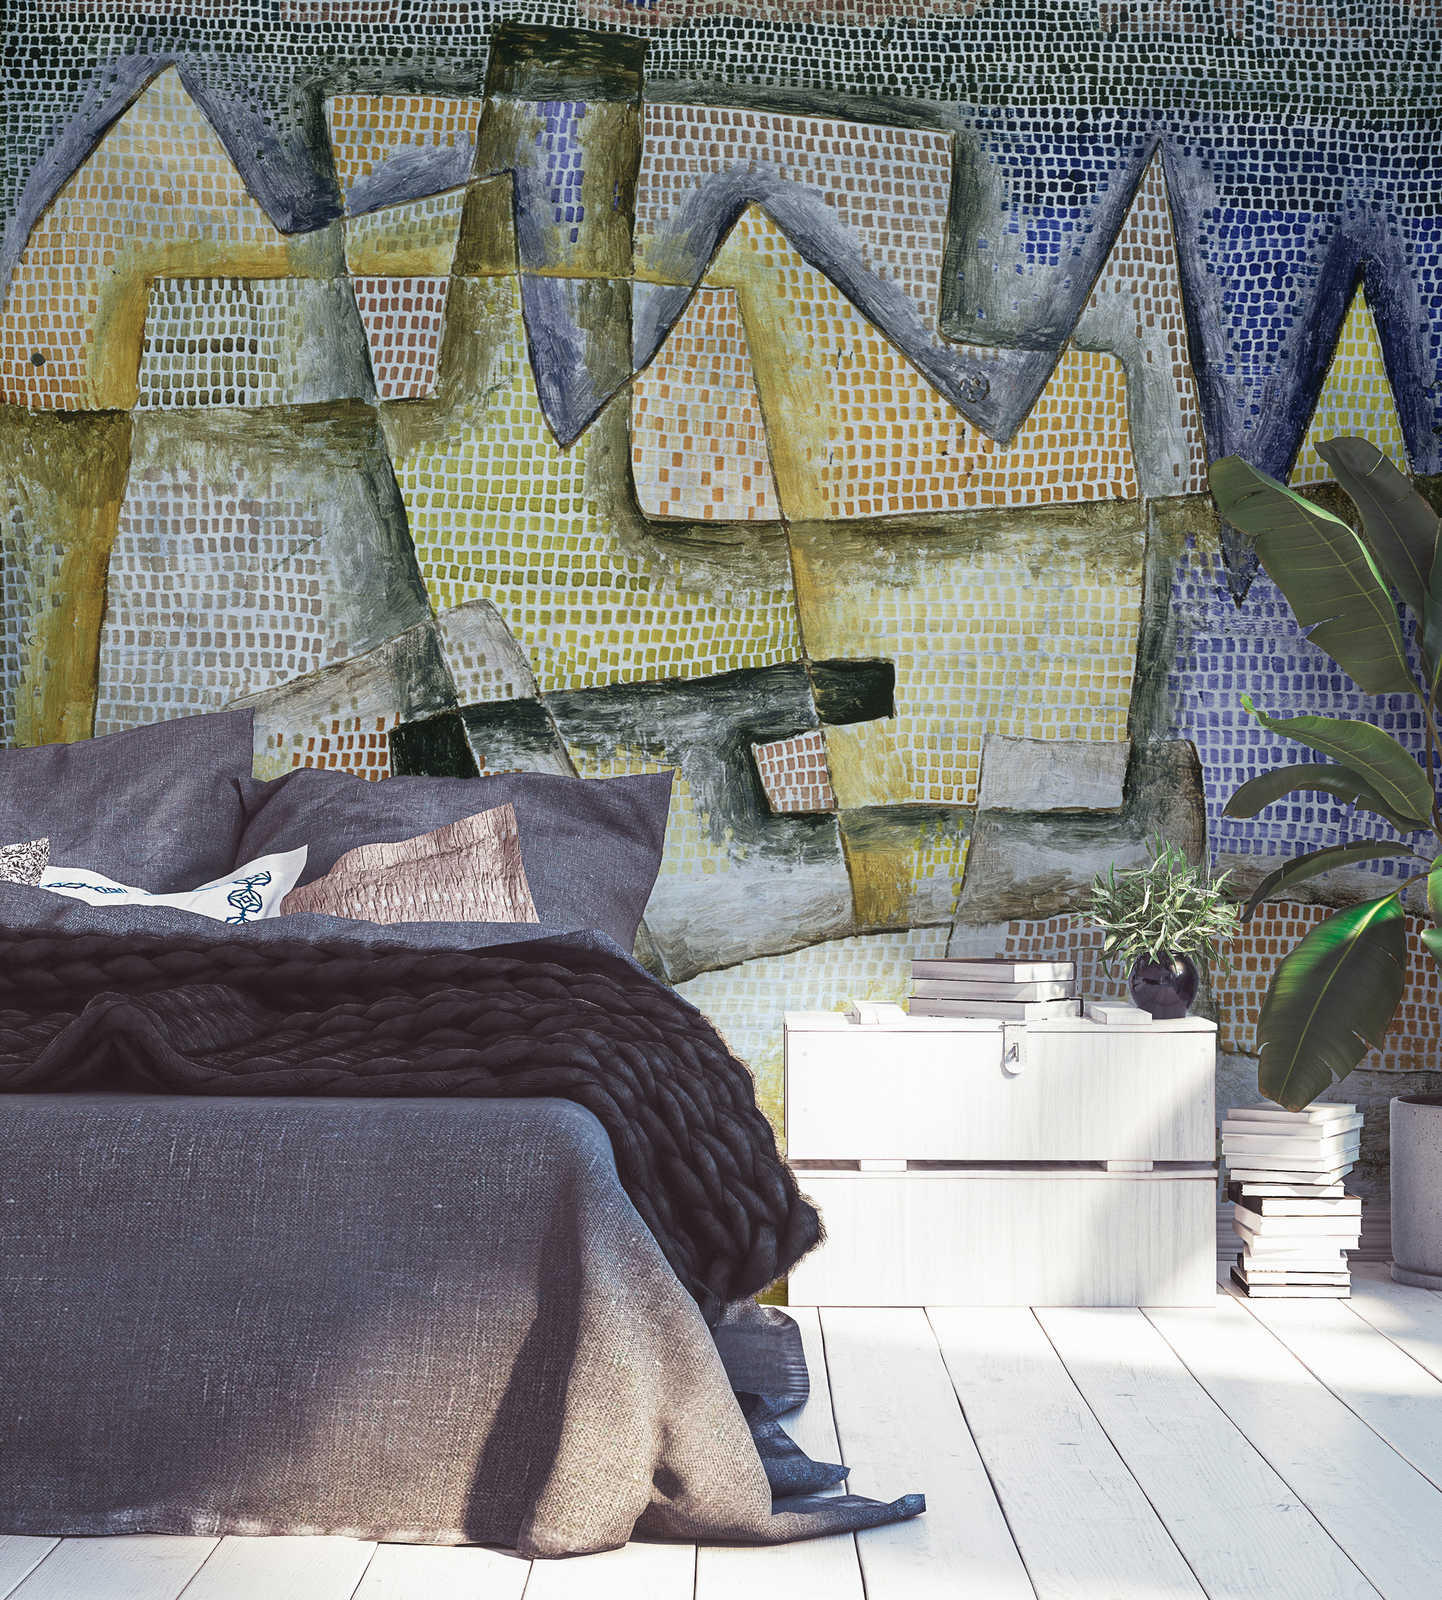             Mural "Costa rocosa" de Paul Klee
        